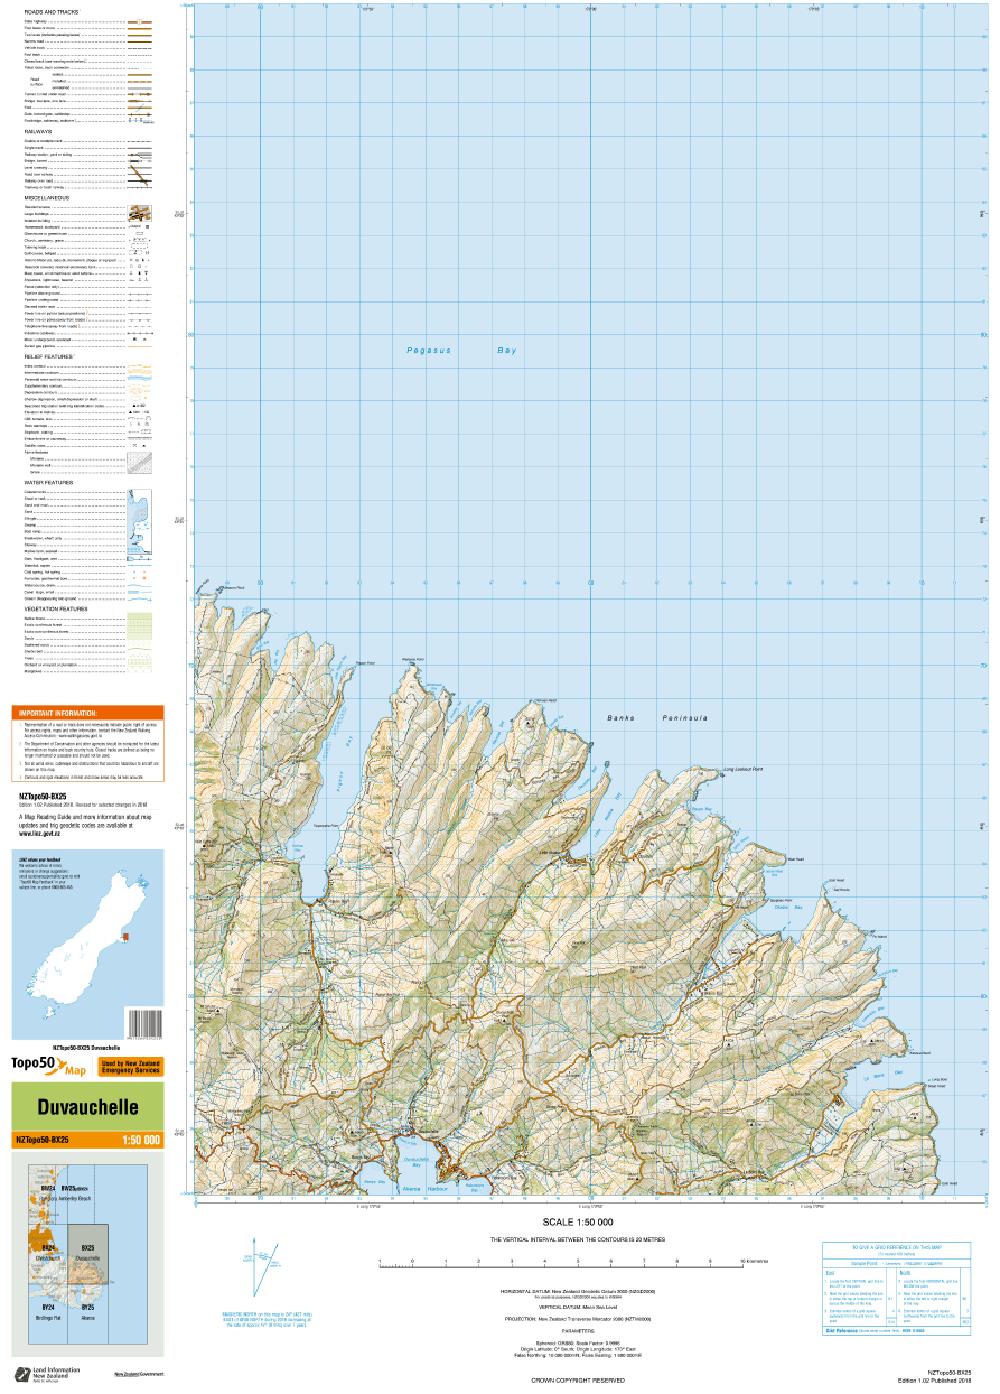 Topo map of Duvauchelle